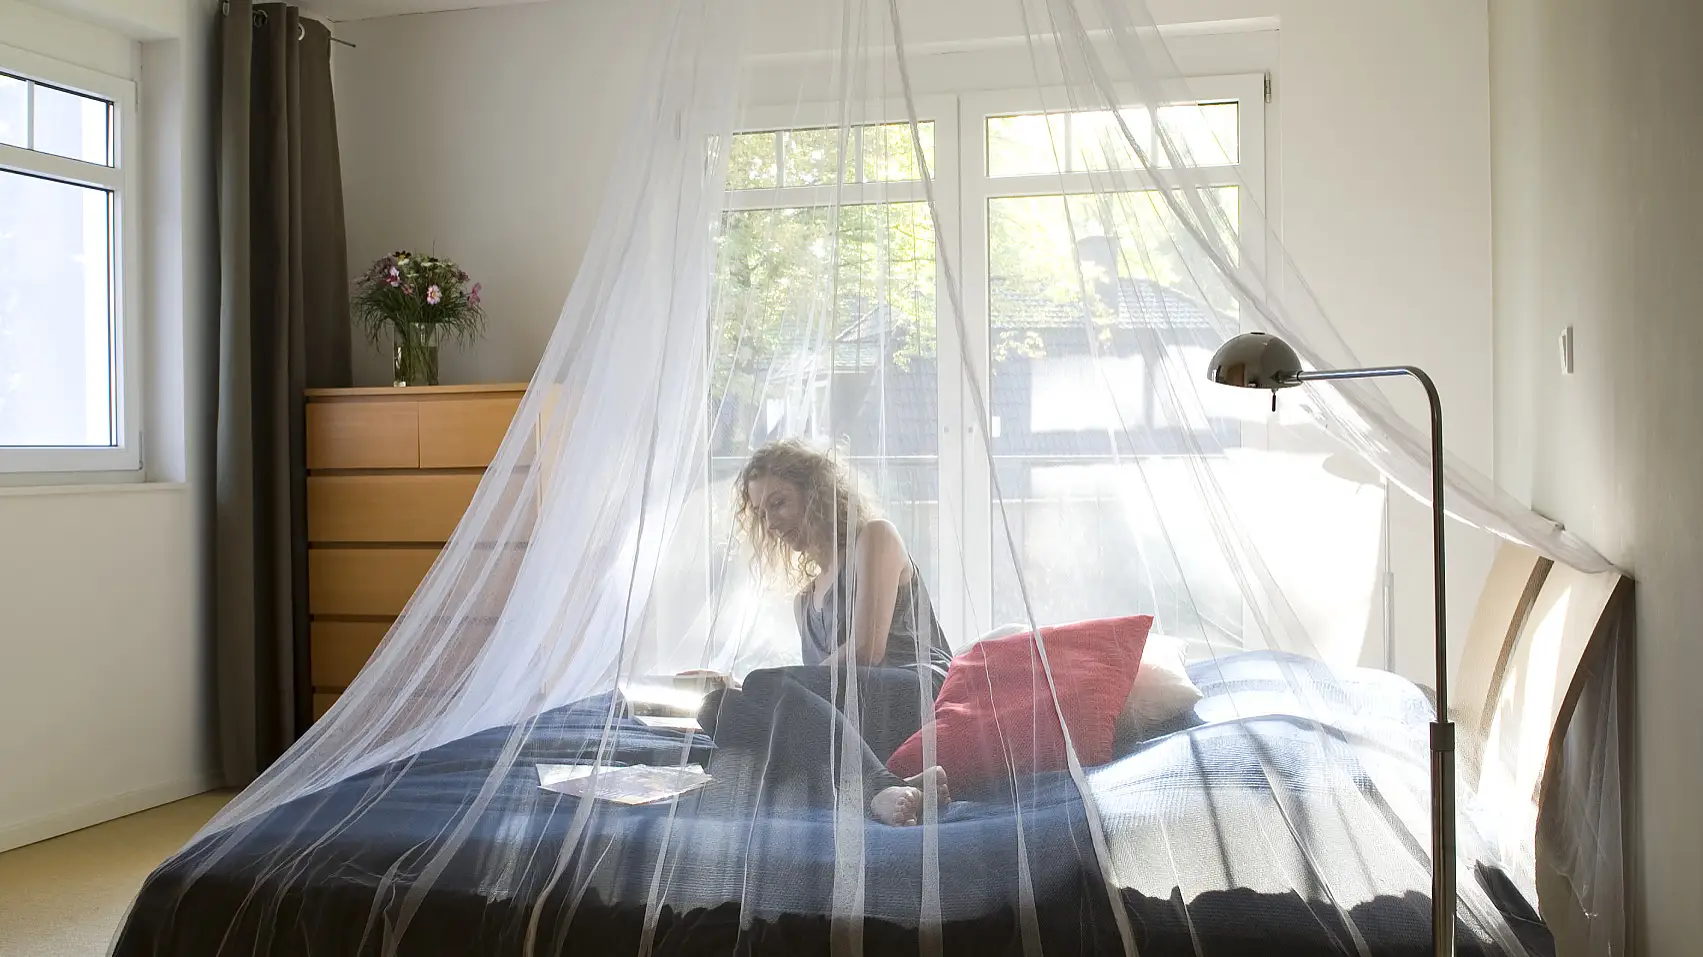 Een klamboe biedt bescherming tegen insecten en kun je aan het plafond van je slaapkamer bevestigen, ook als je op reis bent.